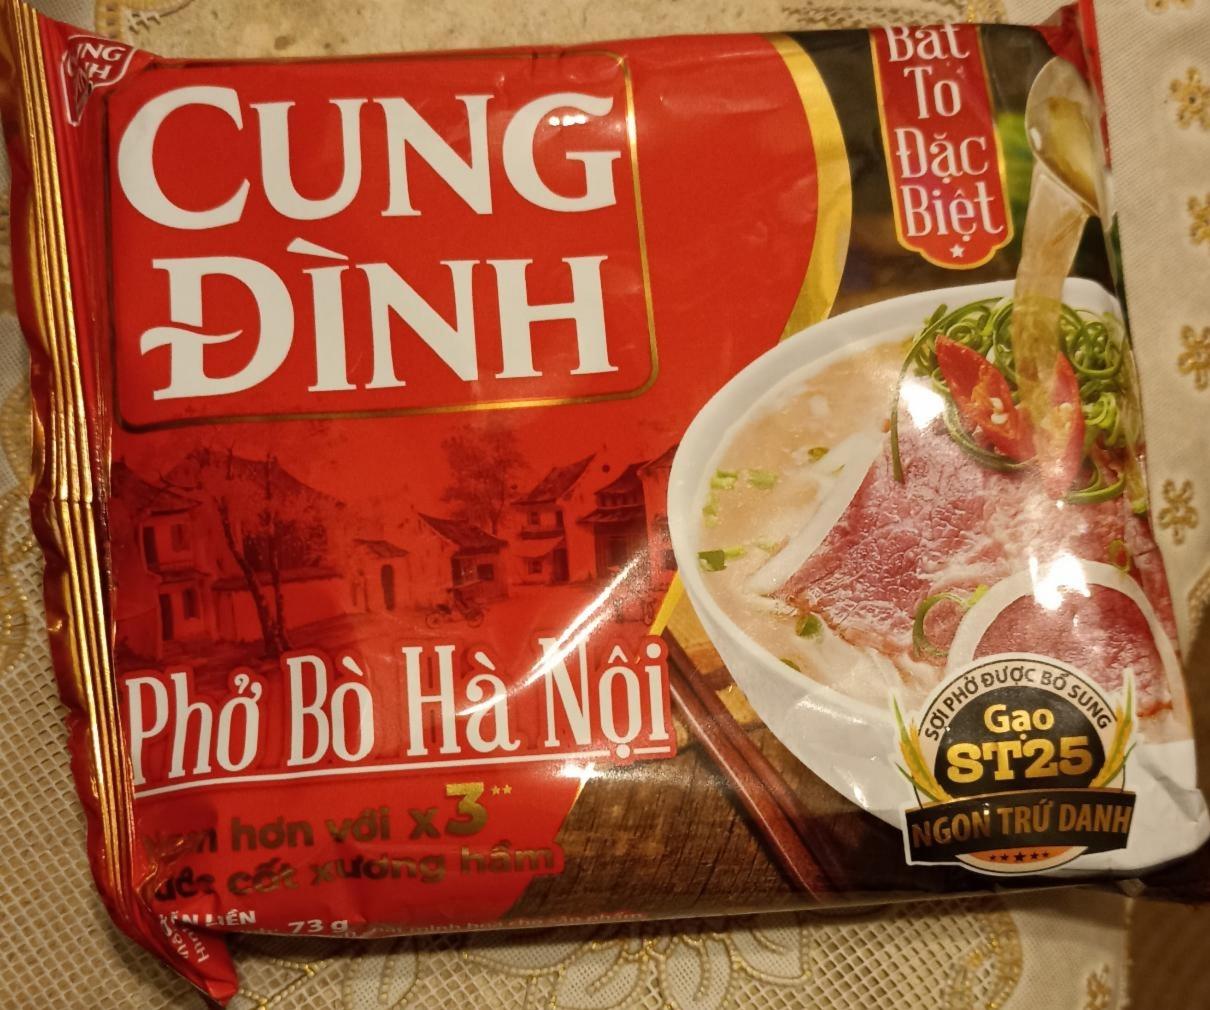 Фото - Лапша рисовая Phở bò Hà Nội Chicken Flavor Cung Đình